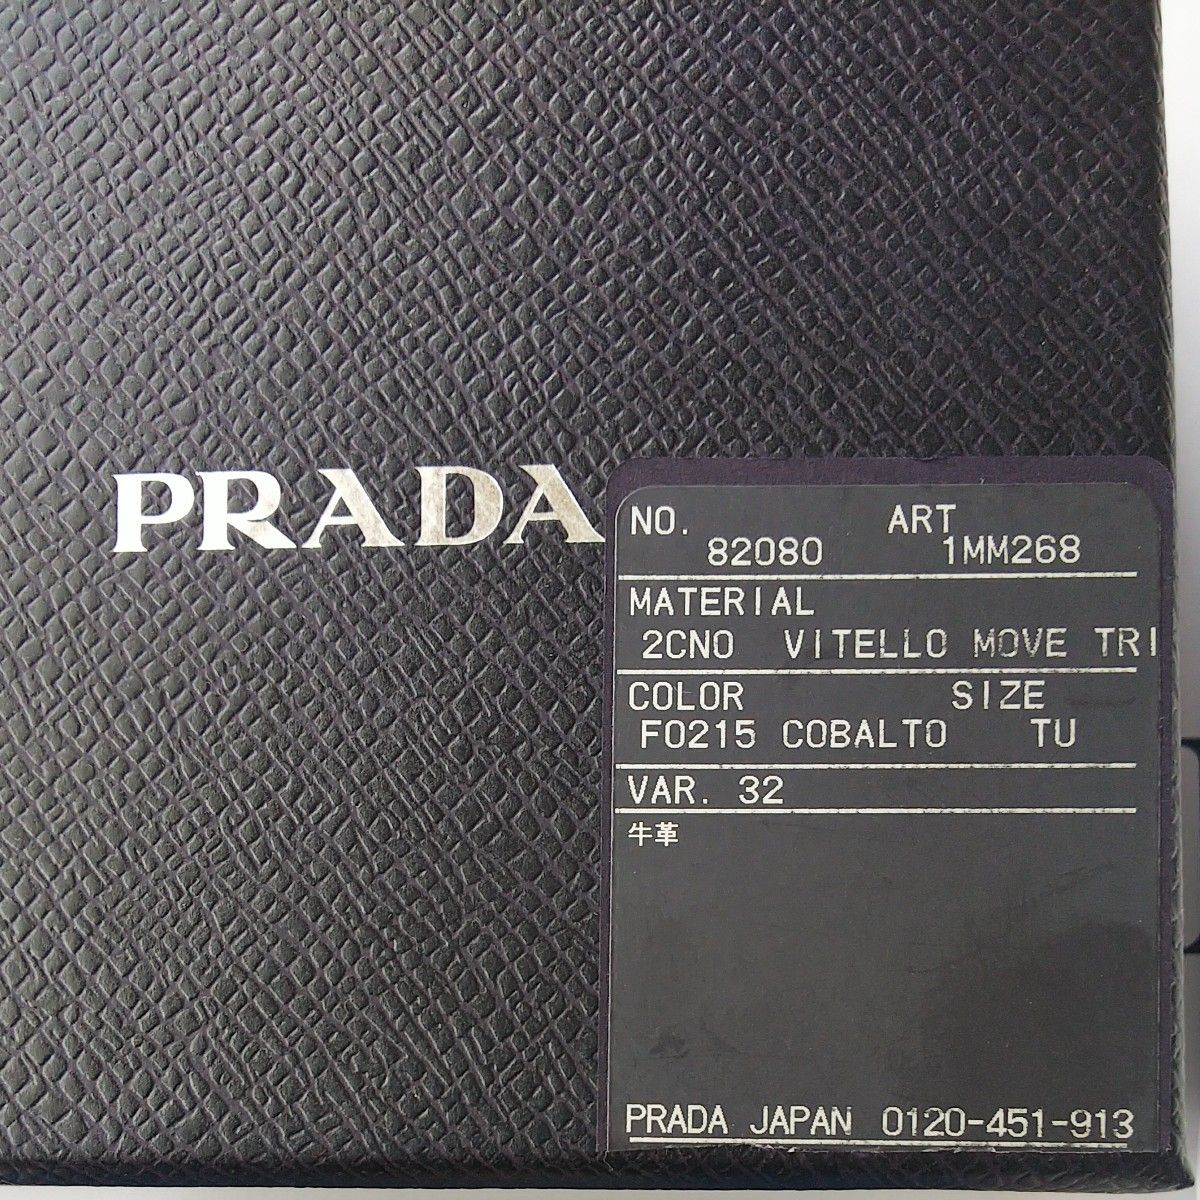  PRADA VITELLO MOVE TR レザー ラウンドファスナー コインケース  カードケース1MM268 